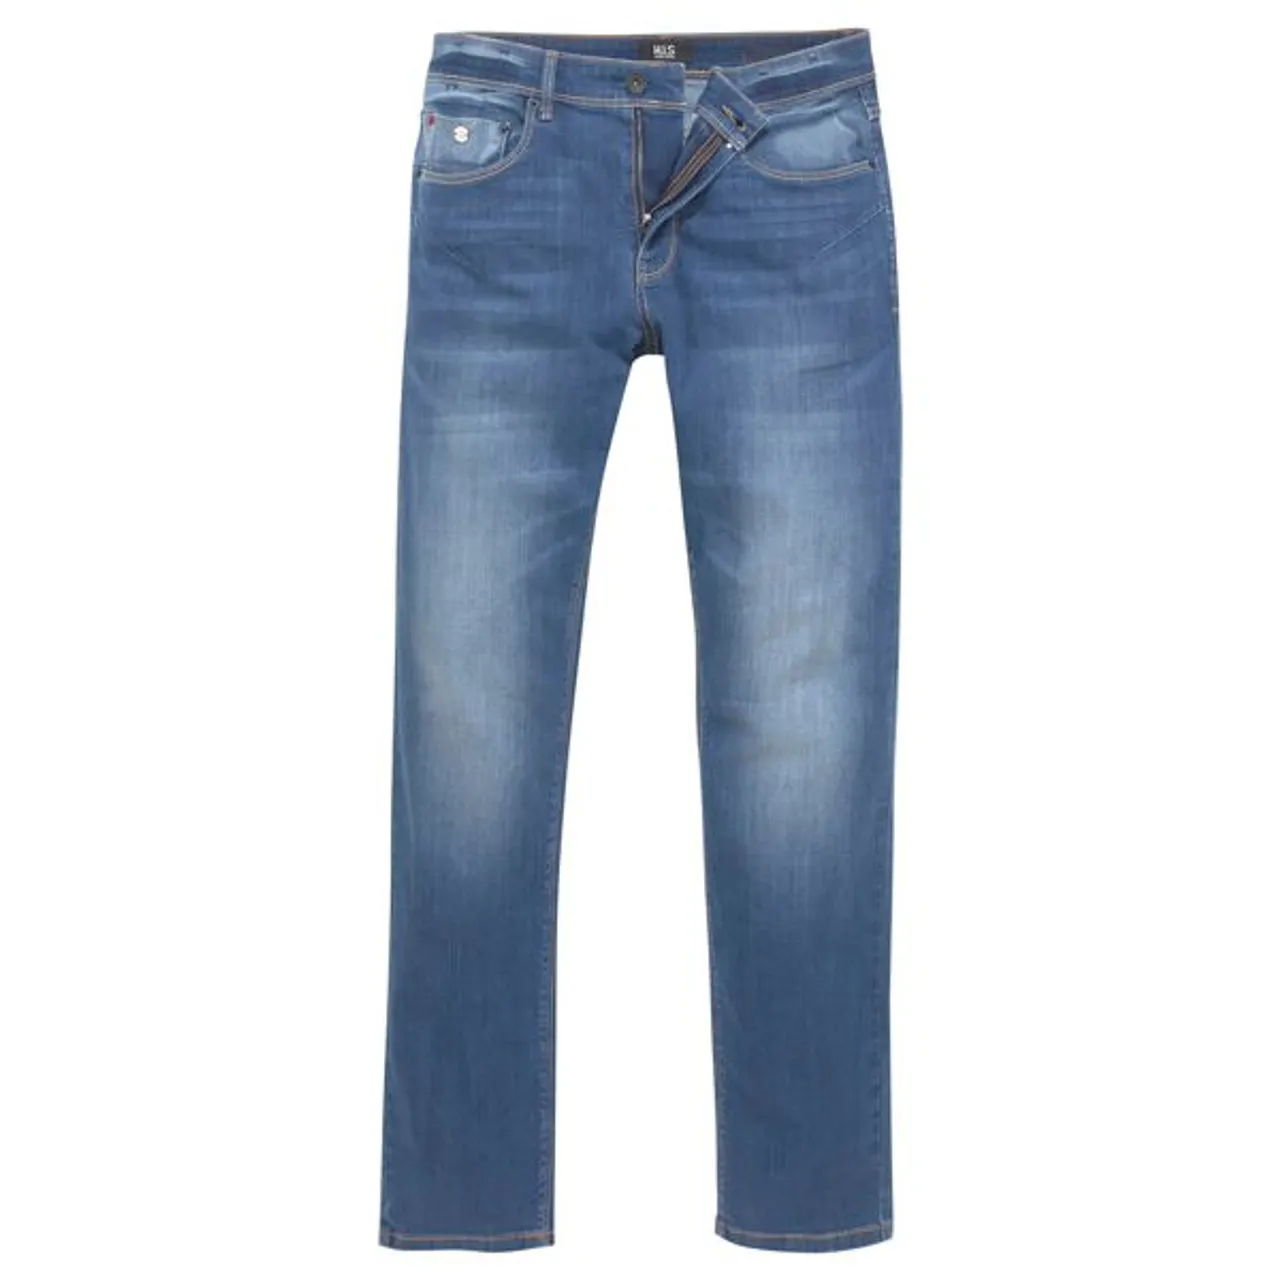 Comfort-fit-Jeans H.I.S "ANTIN" Gr. 30, Länge 34, blau (mid blue) Herren Jeans Comfort Fit Ökologische, wassersparende Produktion durch Ozon Wash